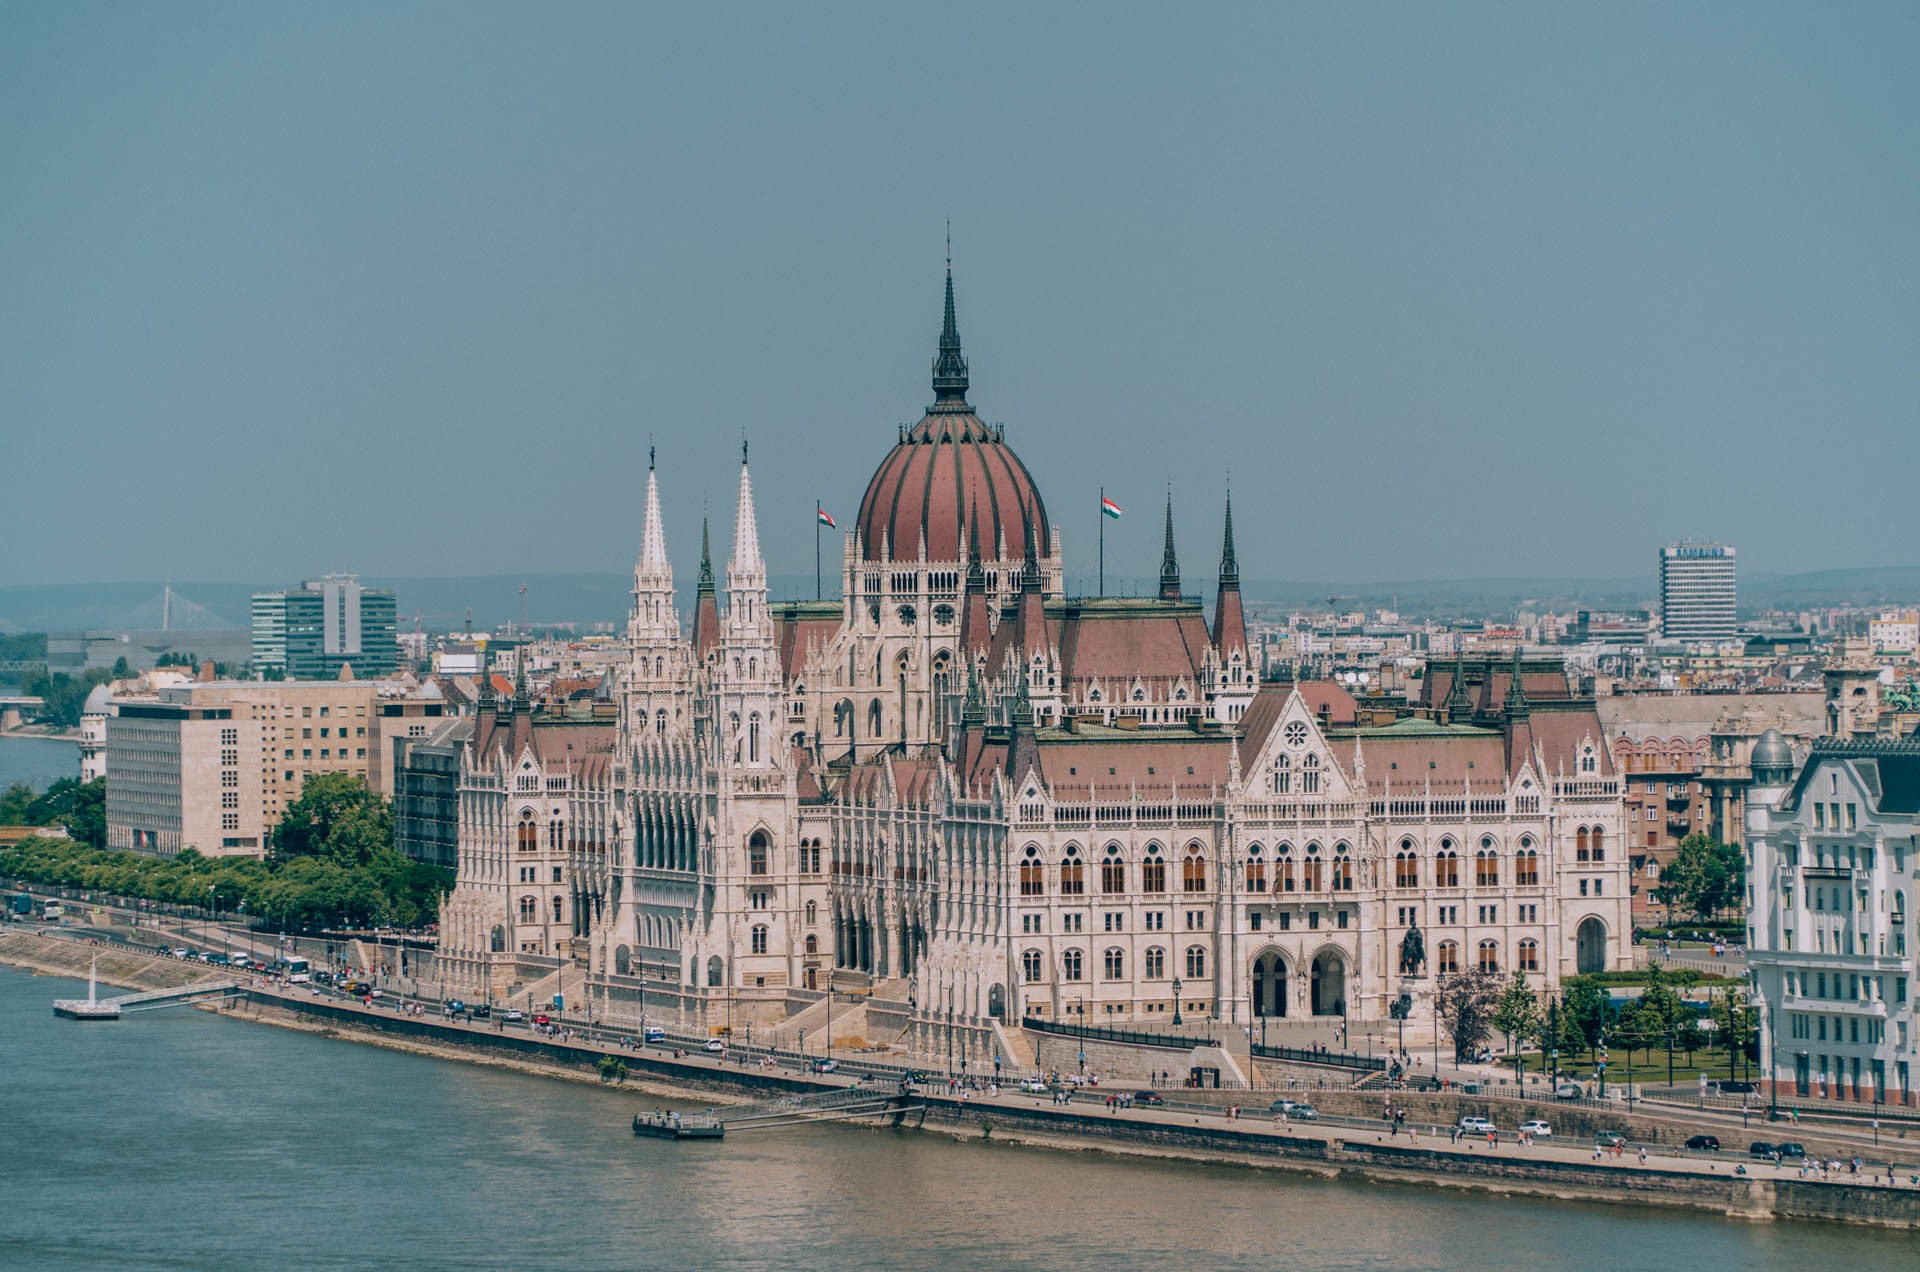 Fasada zewnętrzna Parlamentu | Zwiedzanie Budapesztu